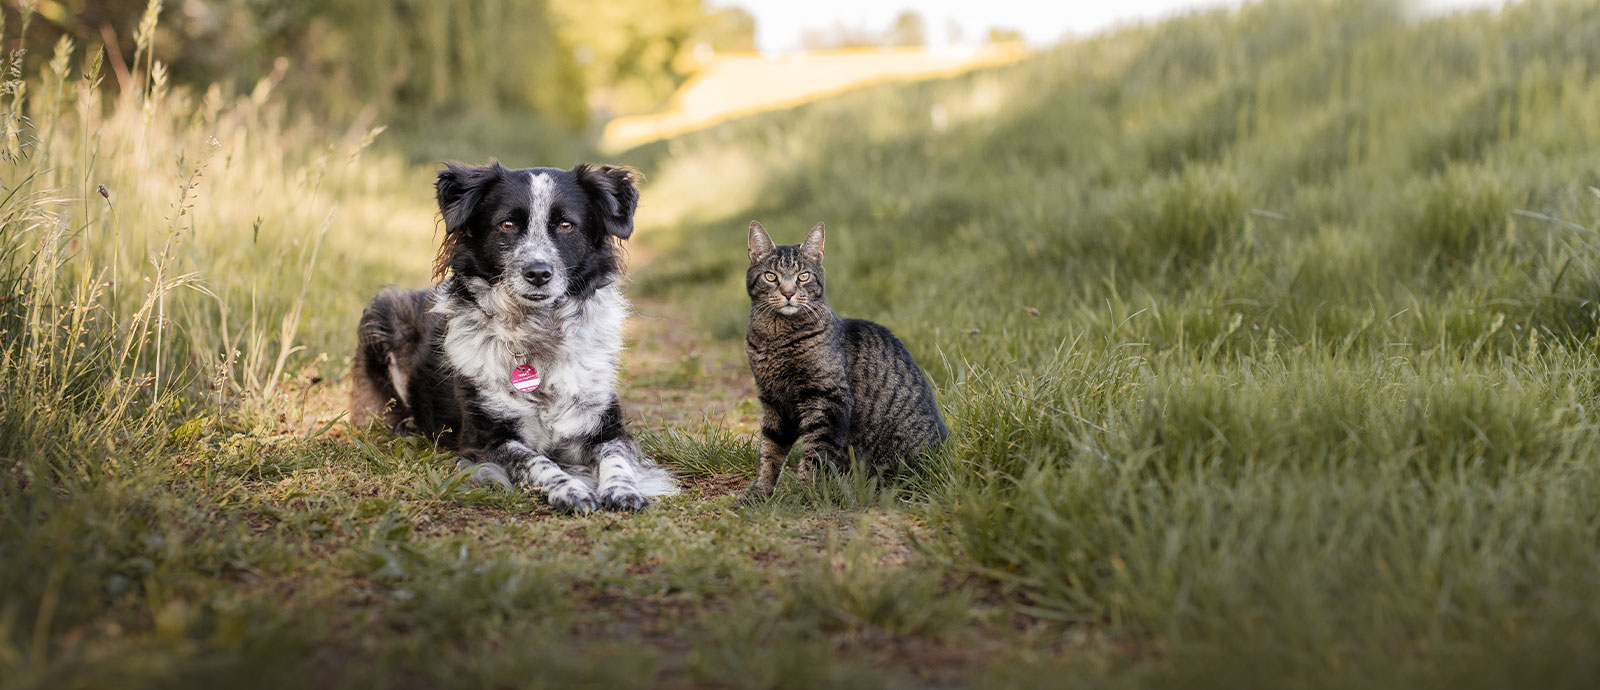 Imagebild von Hund und Katze auf einer Wiese.